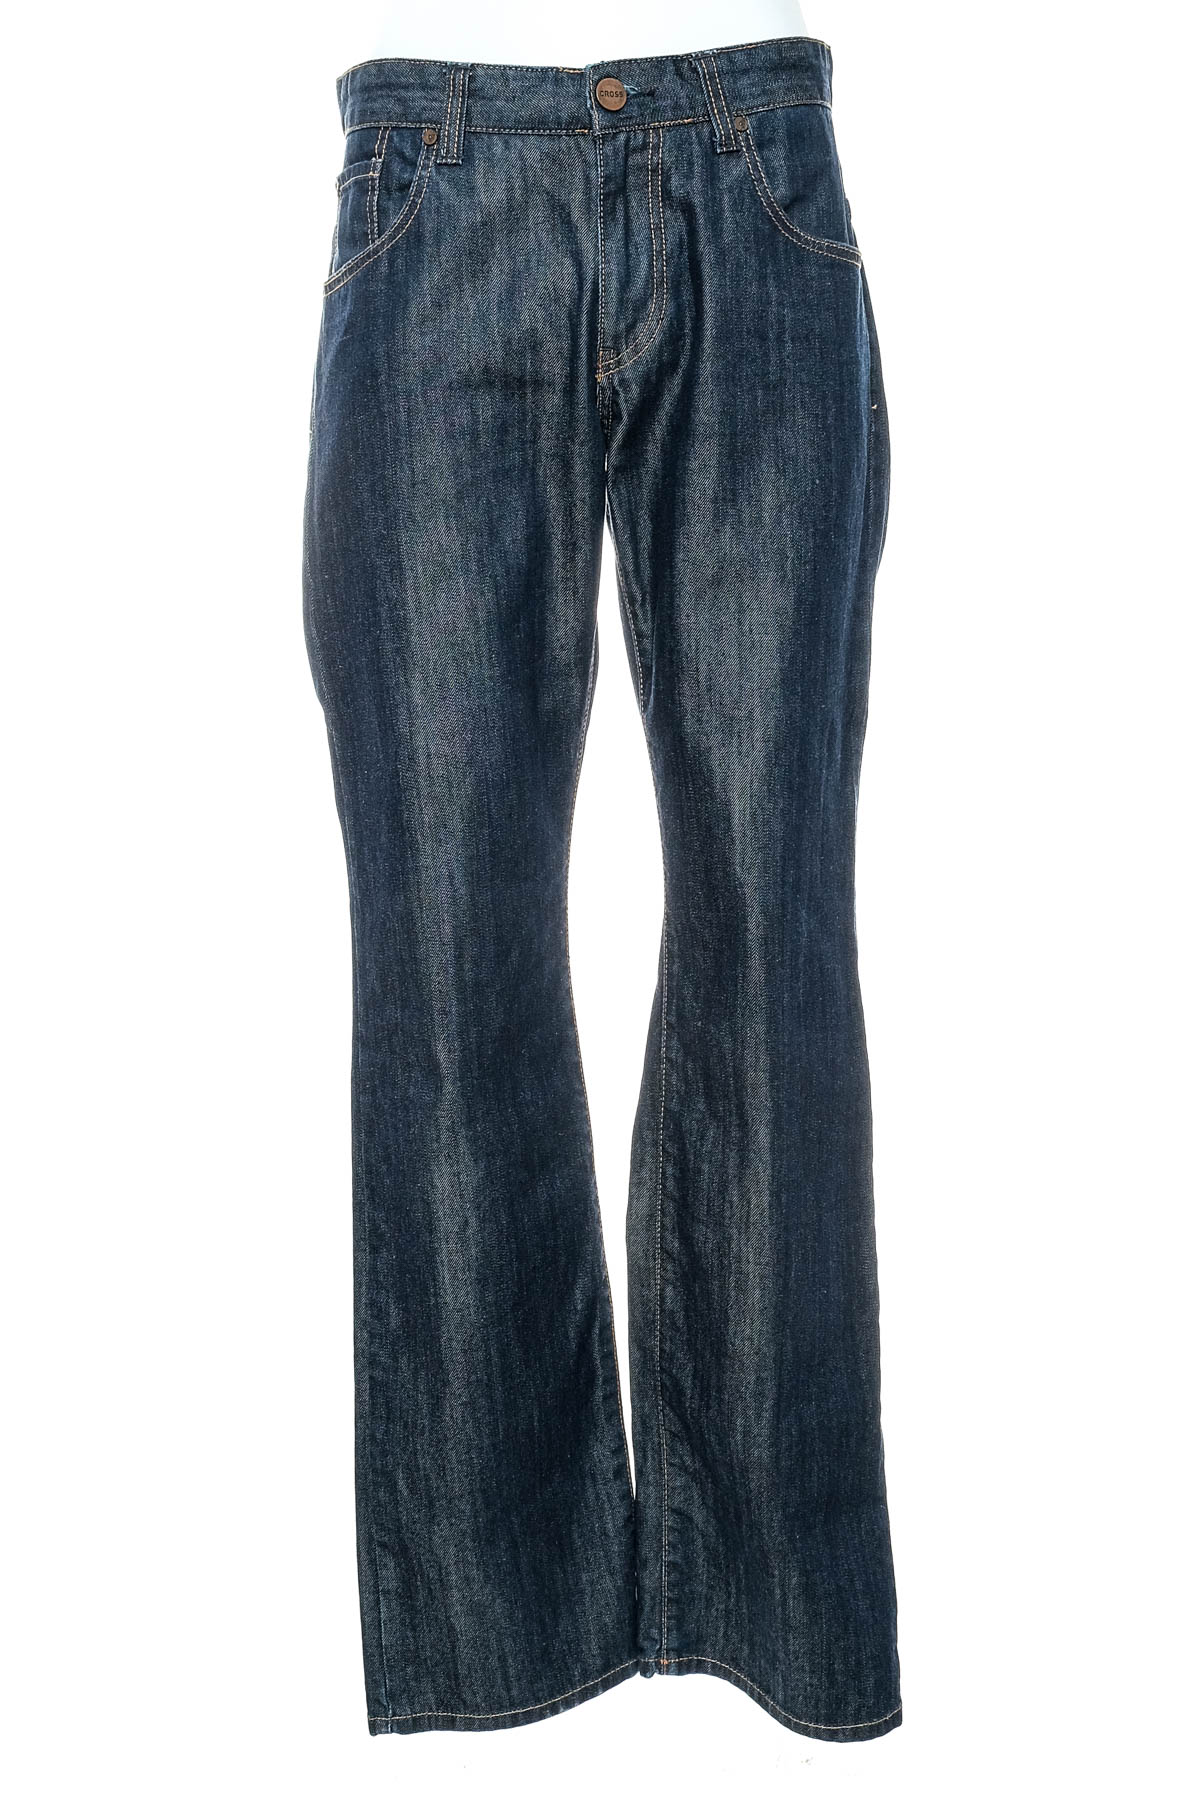 Ανδρικά τζιν - Cross Jeans - 0